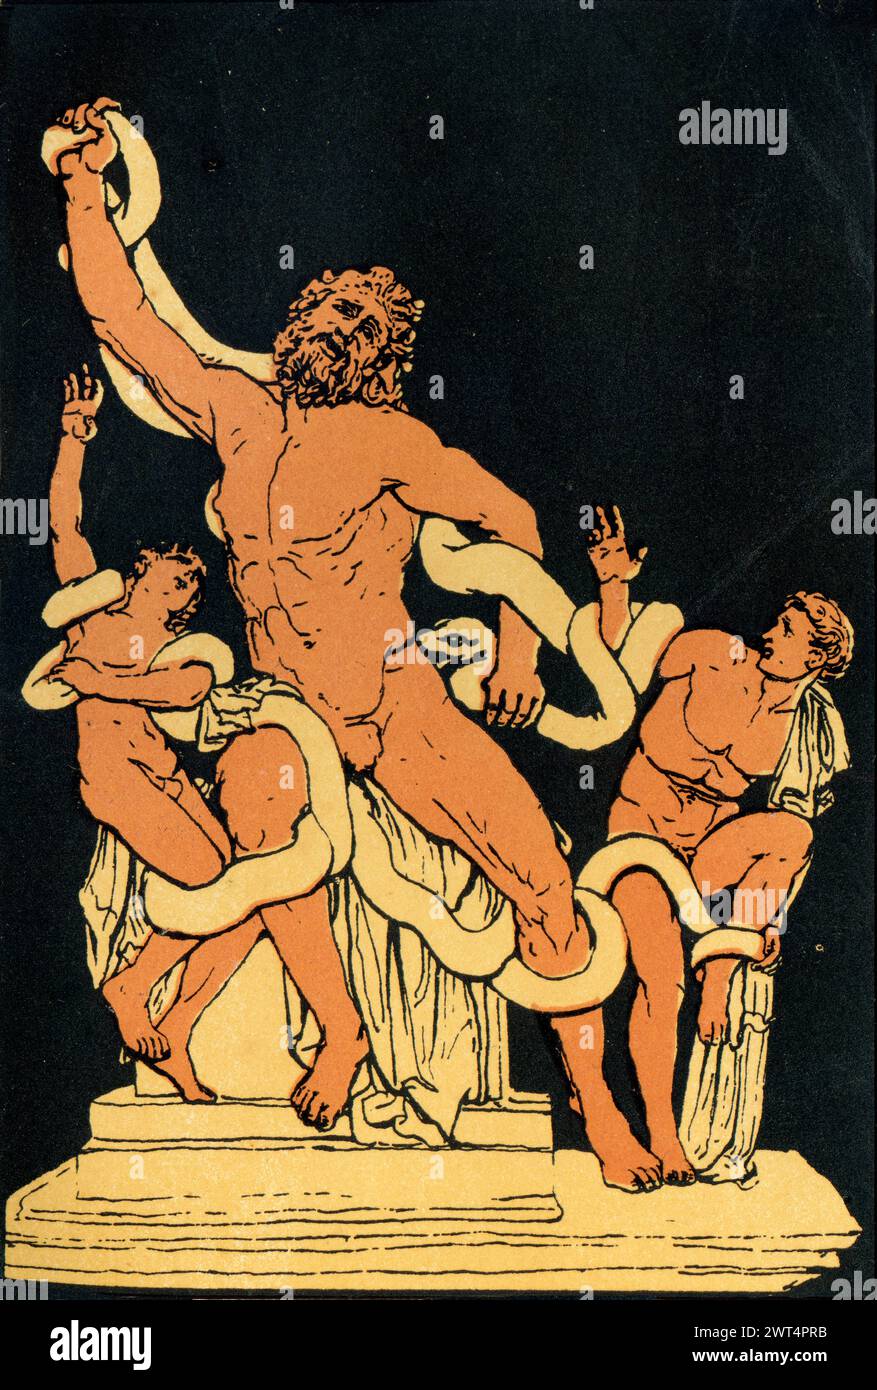 Vintage-Illustration Laocoon und seine Söhne, eine Figur in der griechischen und römischen Mythologie und dem Epic Cycle. Laocoön ist ein trojanischer Priester. Er und seine beiden Jungen Stockfoto